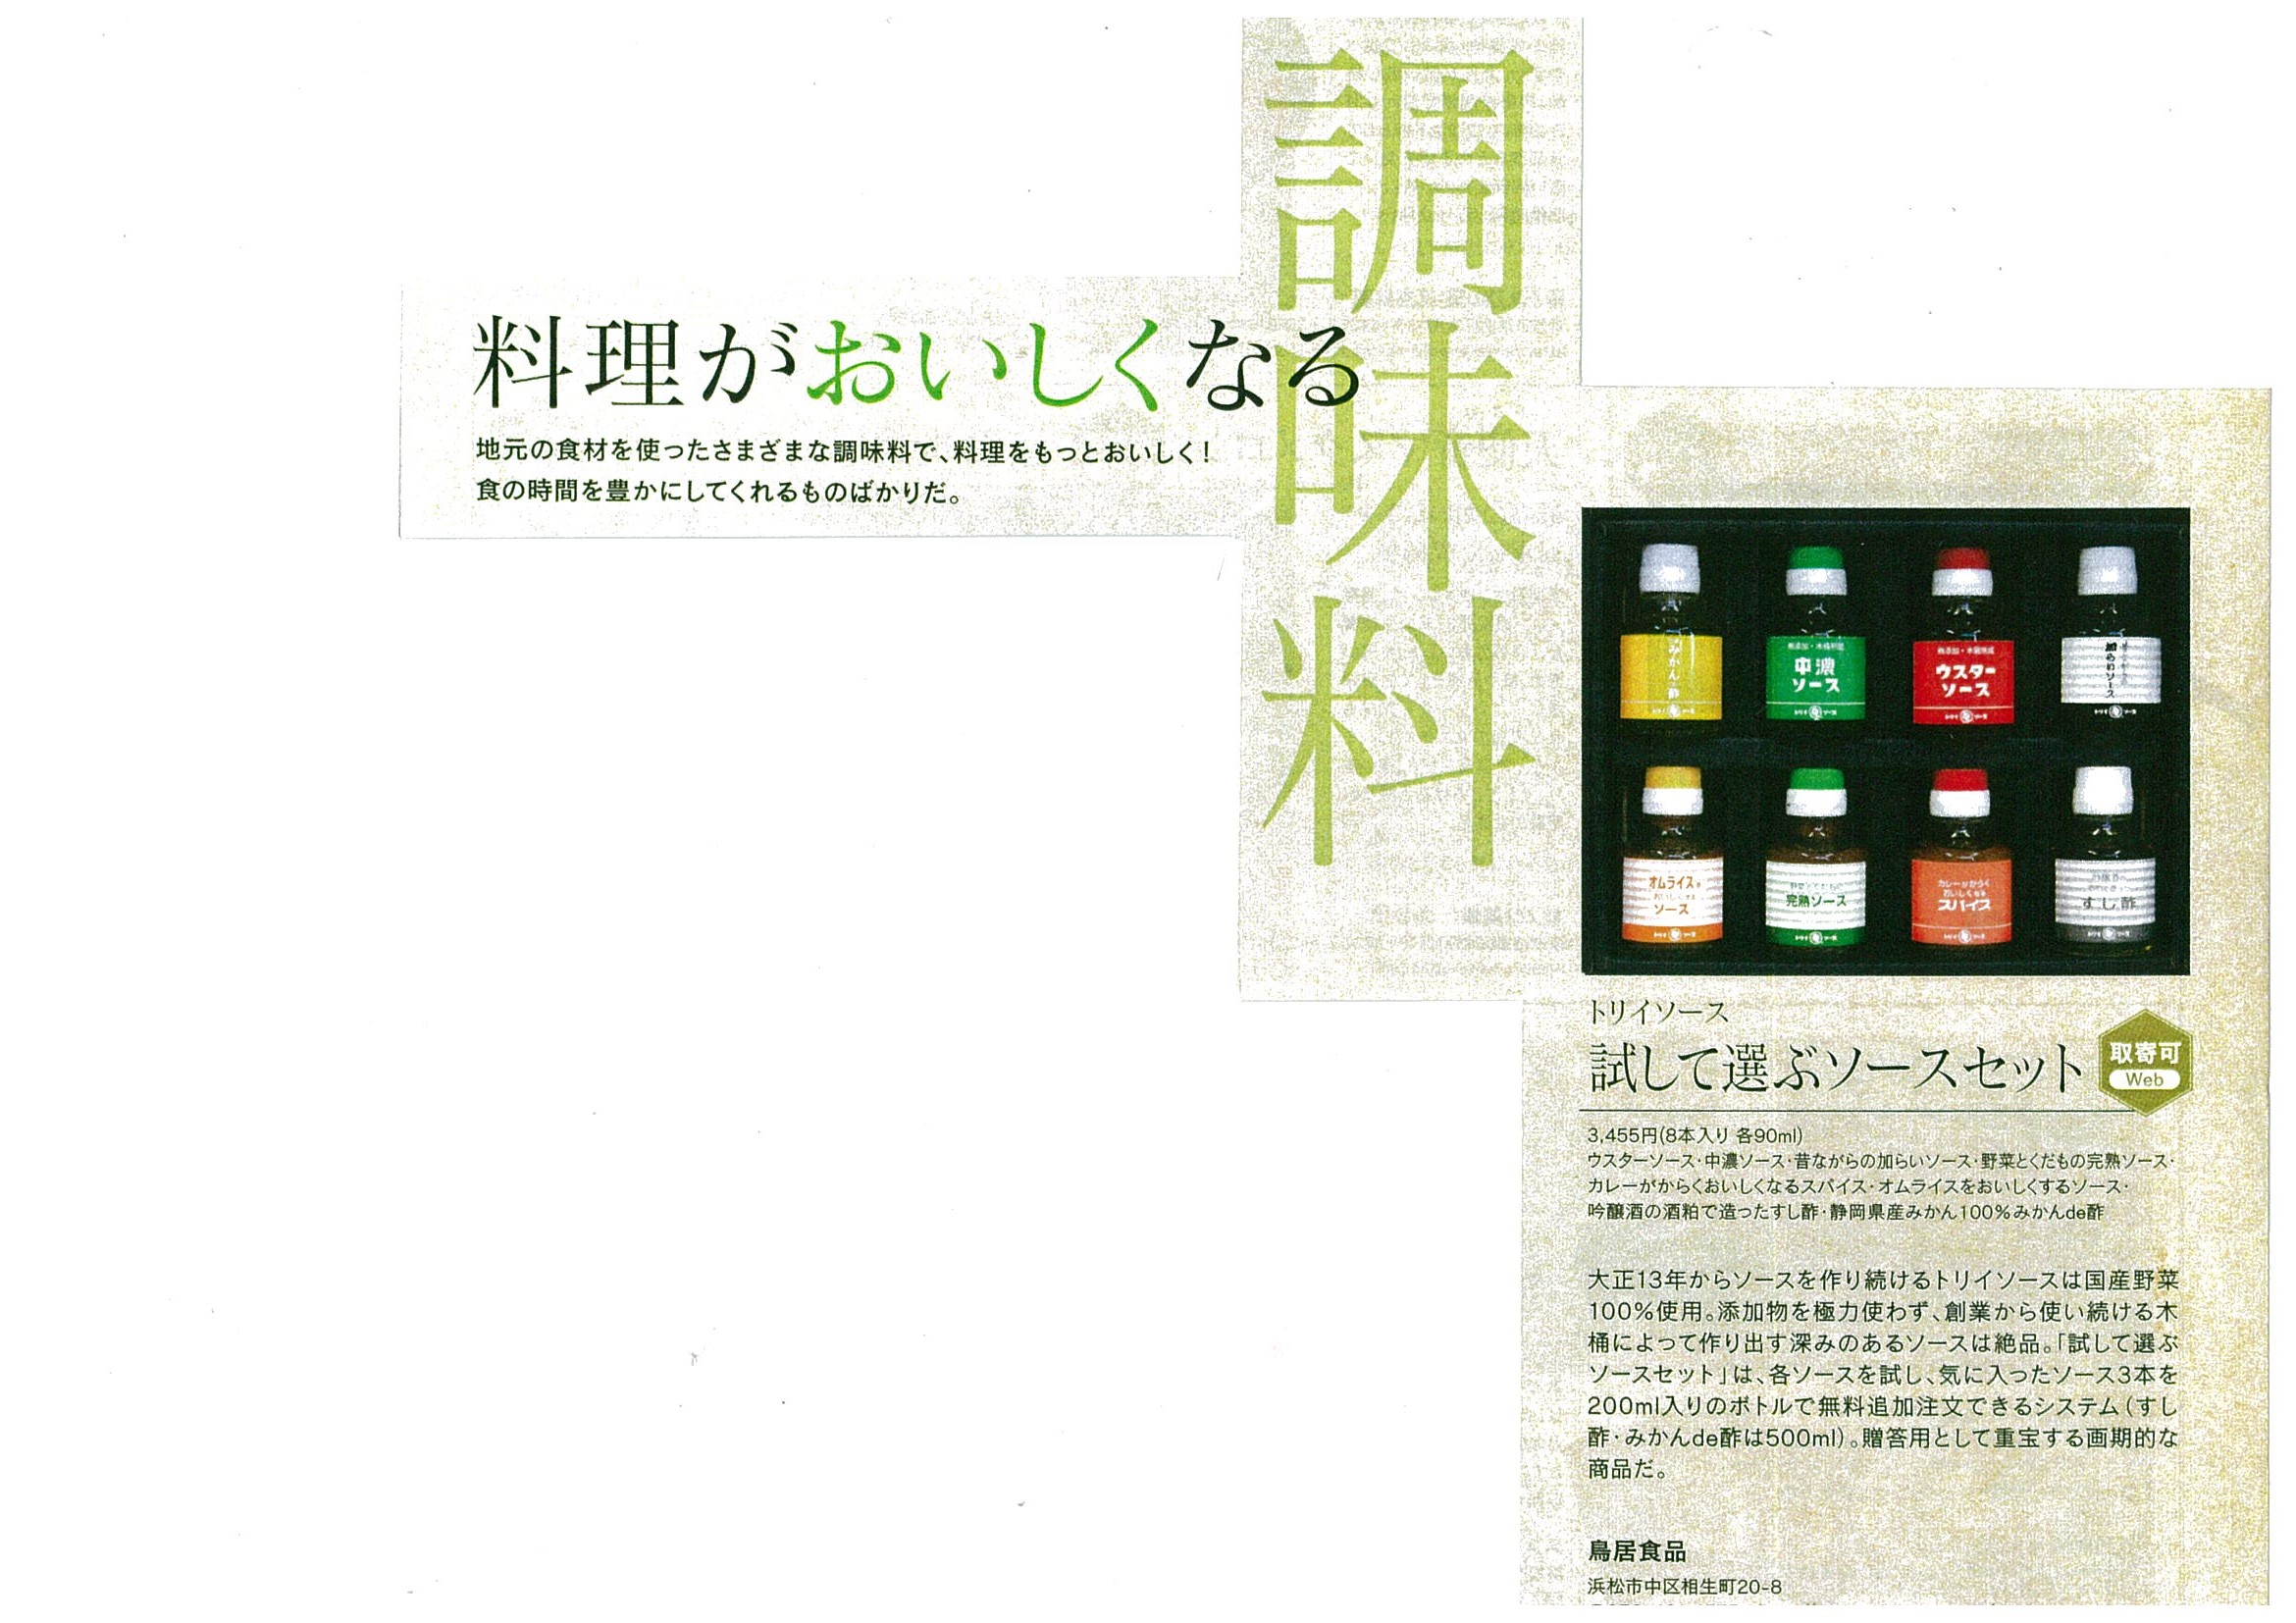 http://www.torii-sauce.jp/media/img-707165649-0001.jpg